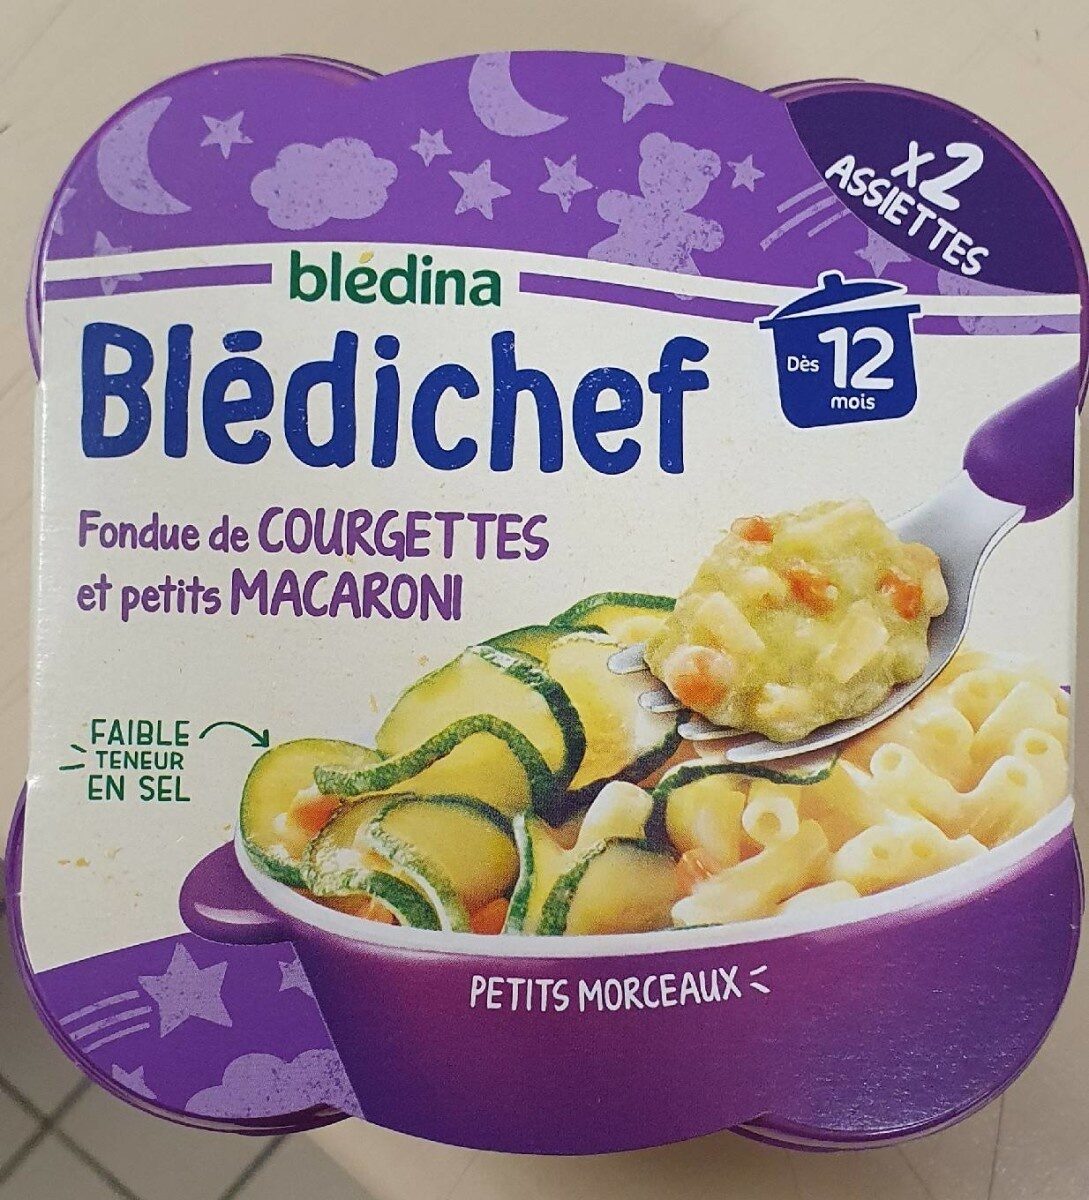 BLEDICHEF 2x230g Fondue de Courgettes et Petits Macaroni Dès 12 mois - Produit